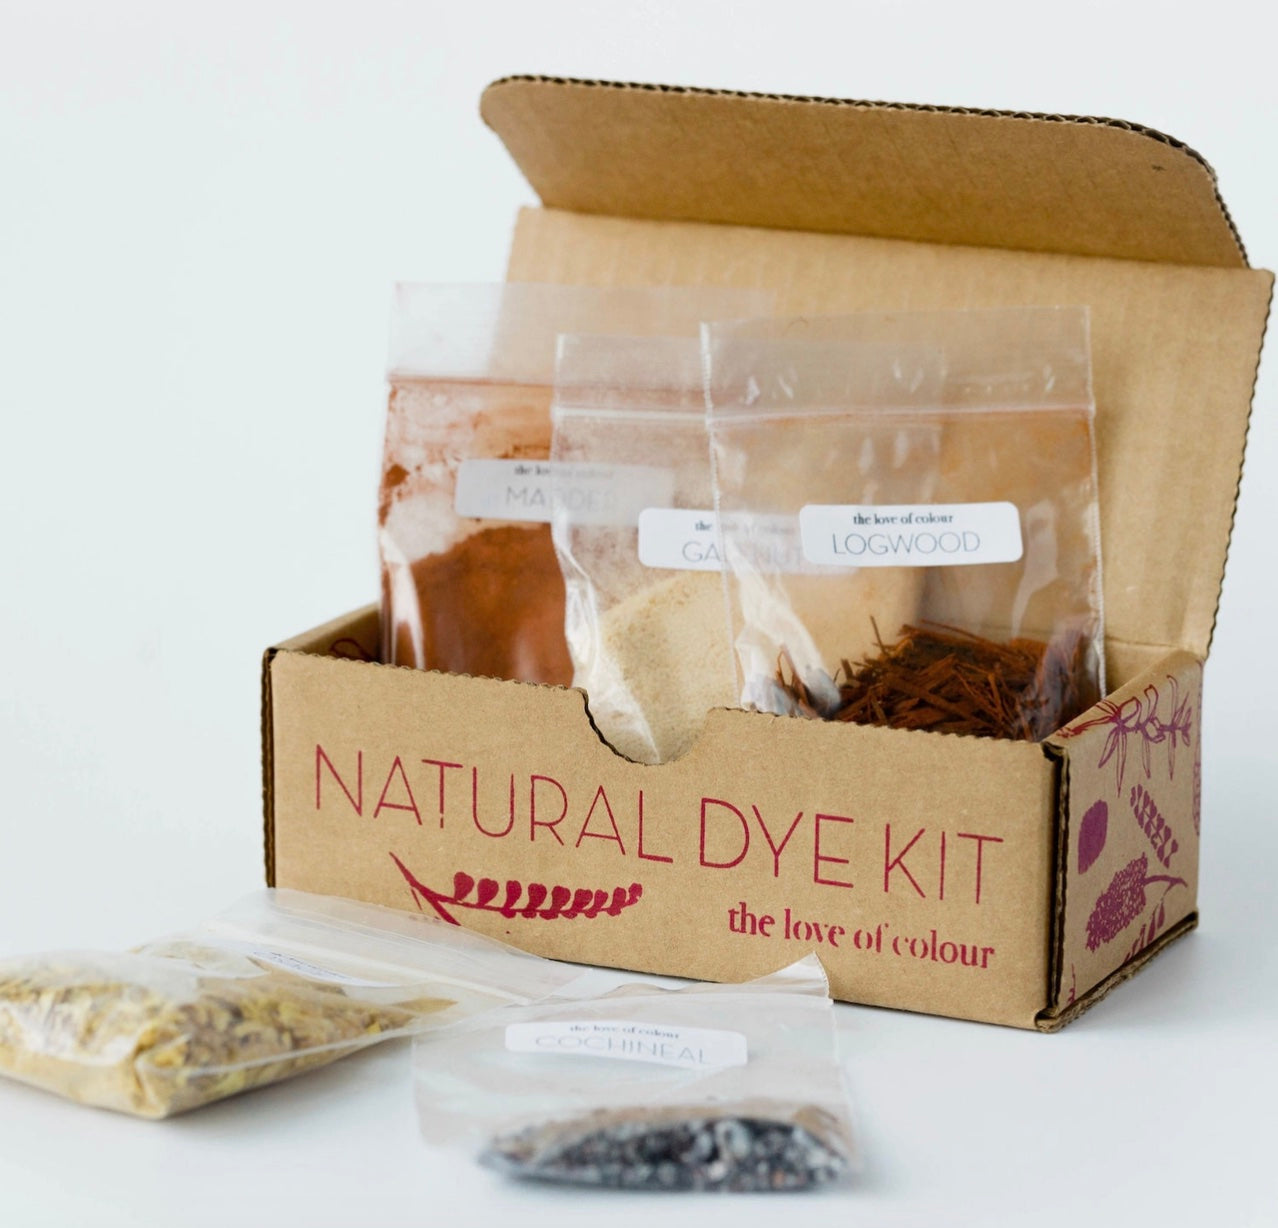 Natural Dye Kits